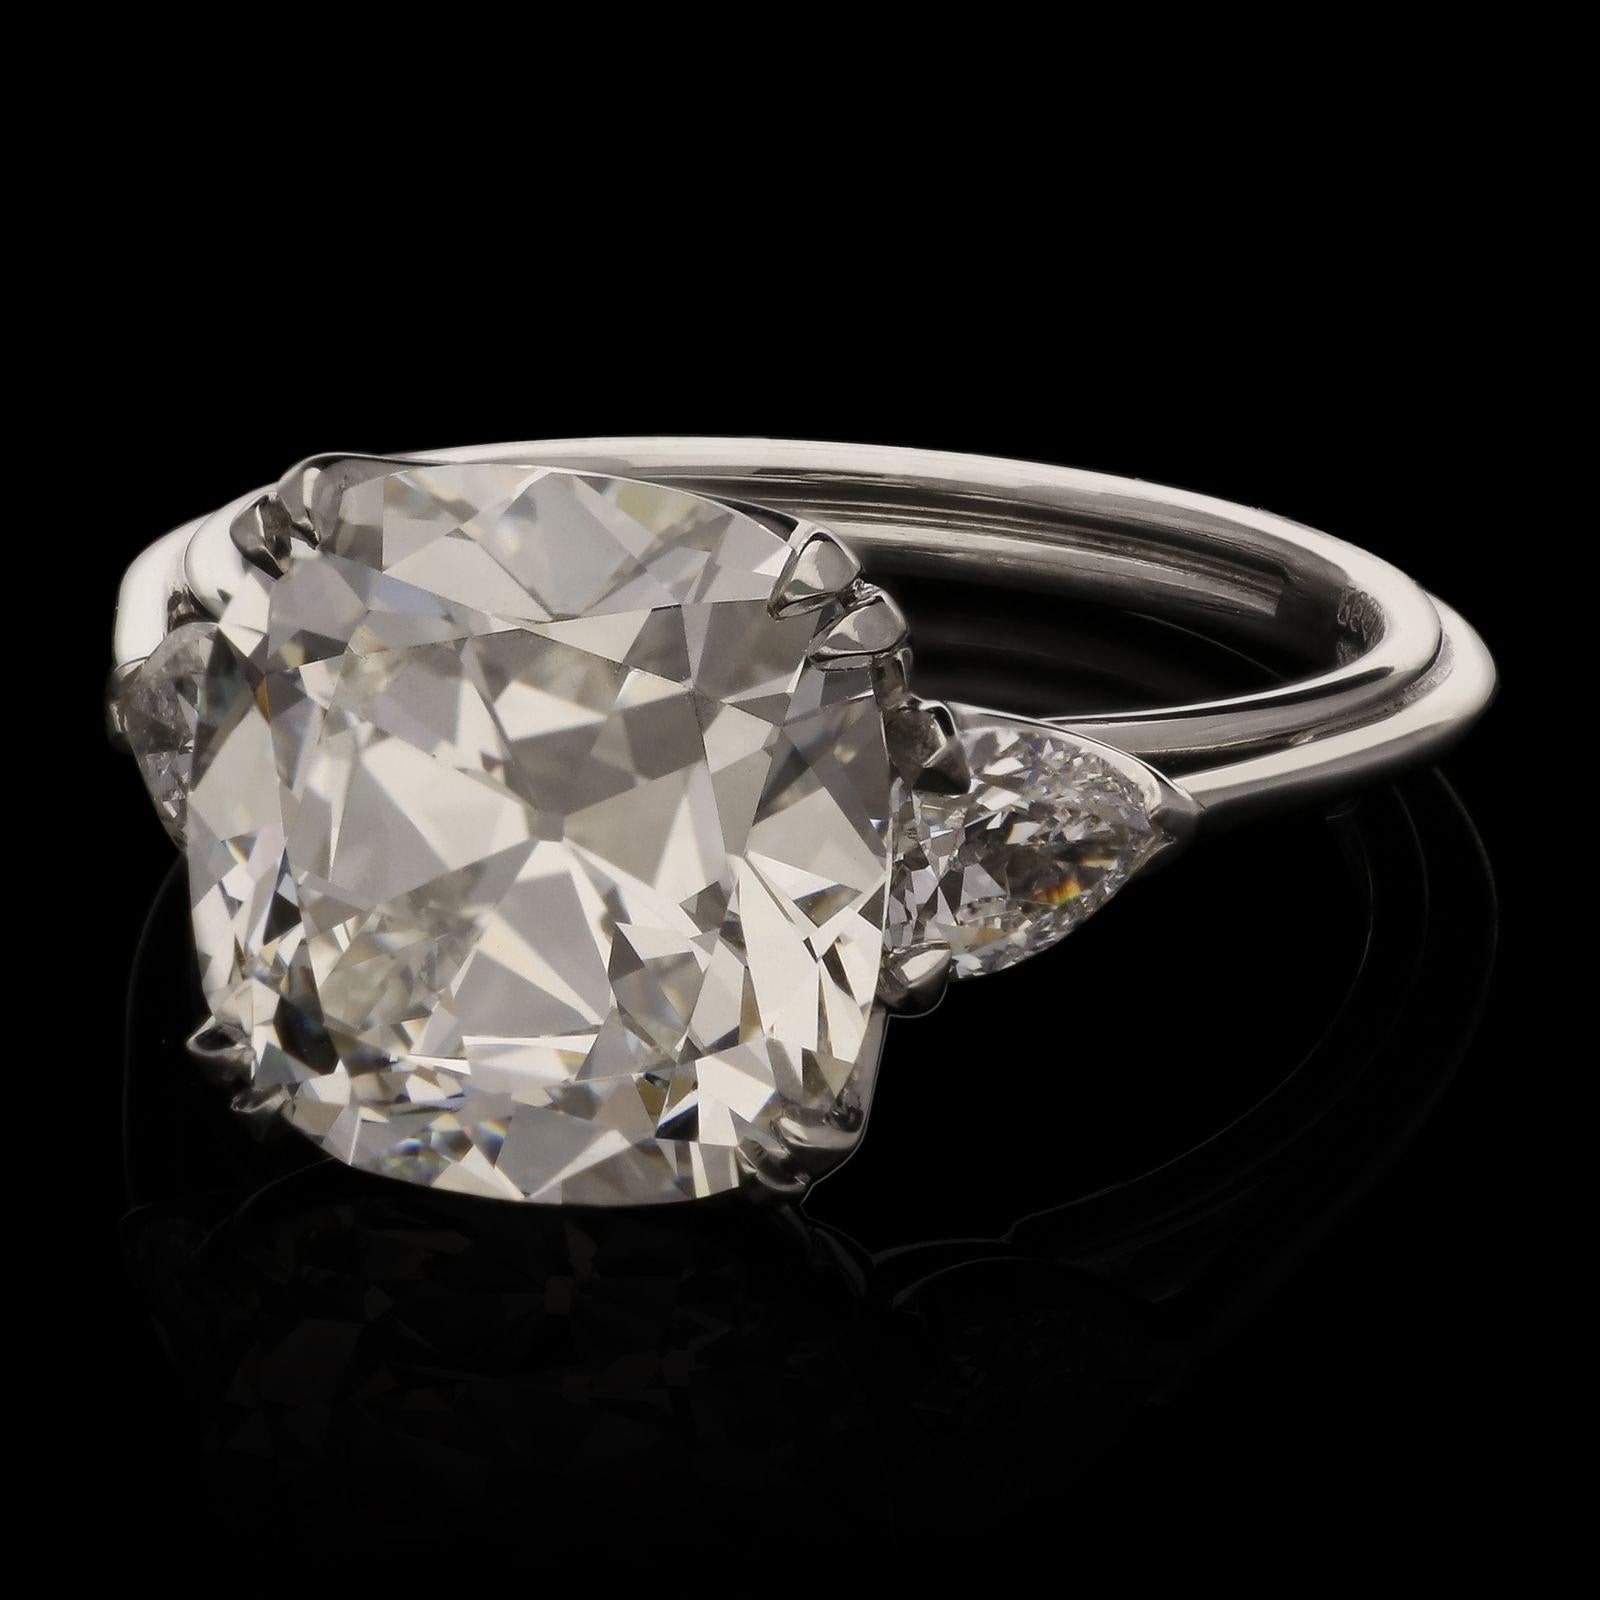 Ein atemberaubender Altschliff-Diamantring von Hancocks, in der Mitte besetzt mit einem wunderschön hellen und lebendigen Altminen-Brillantschliff-Diamanten mit einem Gewicht von 4,63 ct. und einer Farbe von G und einer Reinheit von VVS2 in